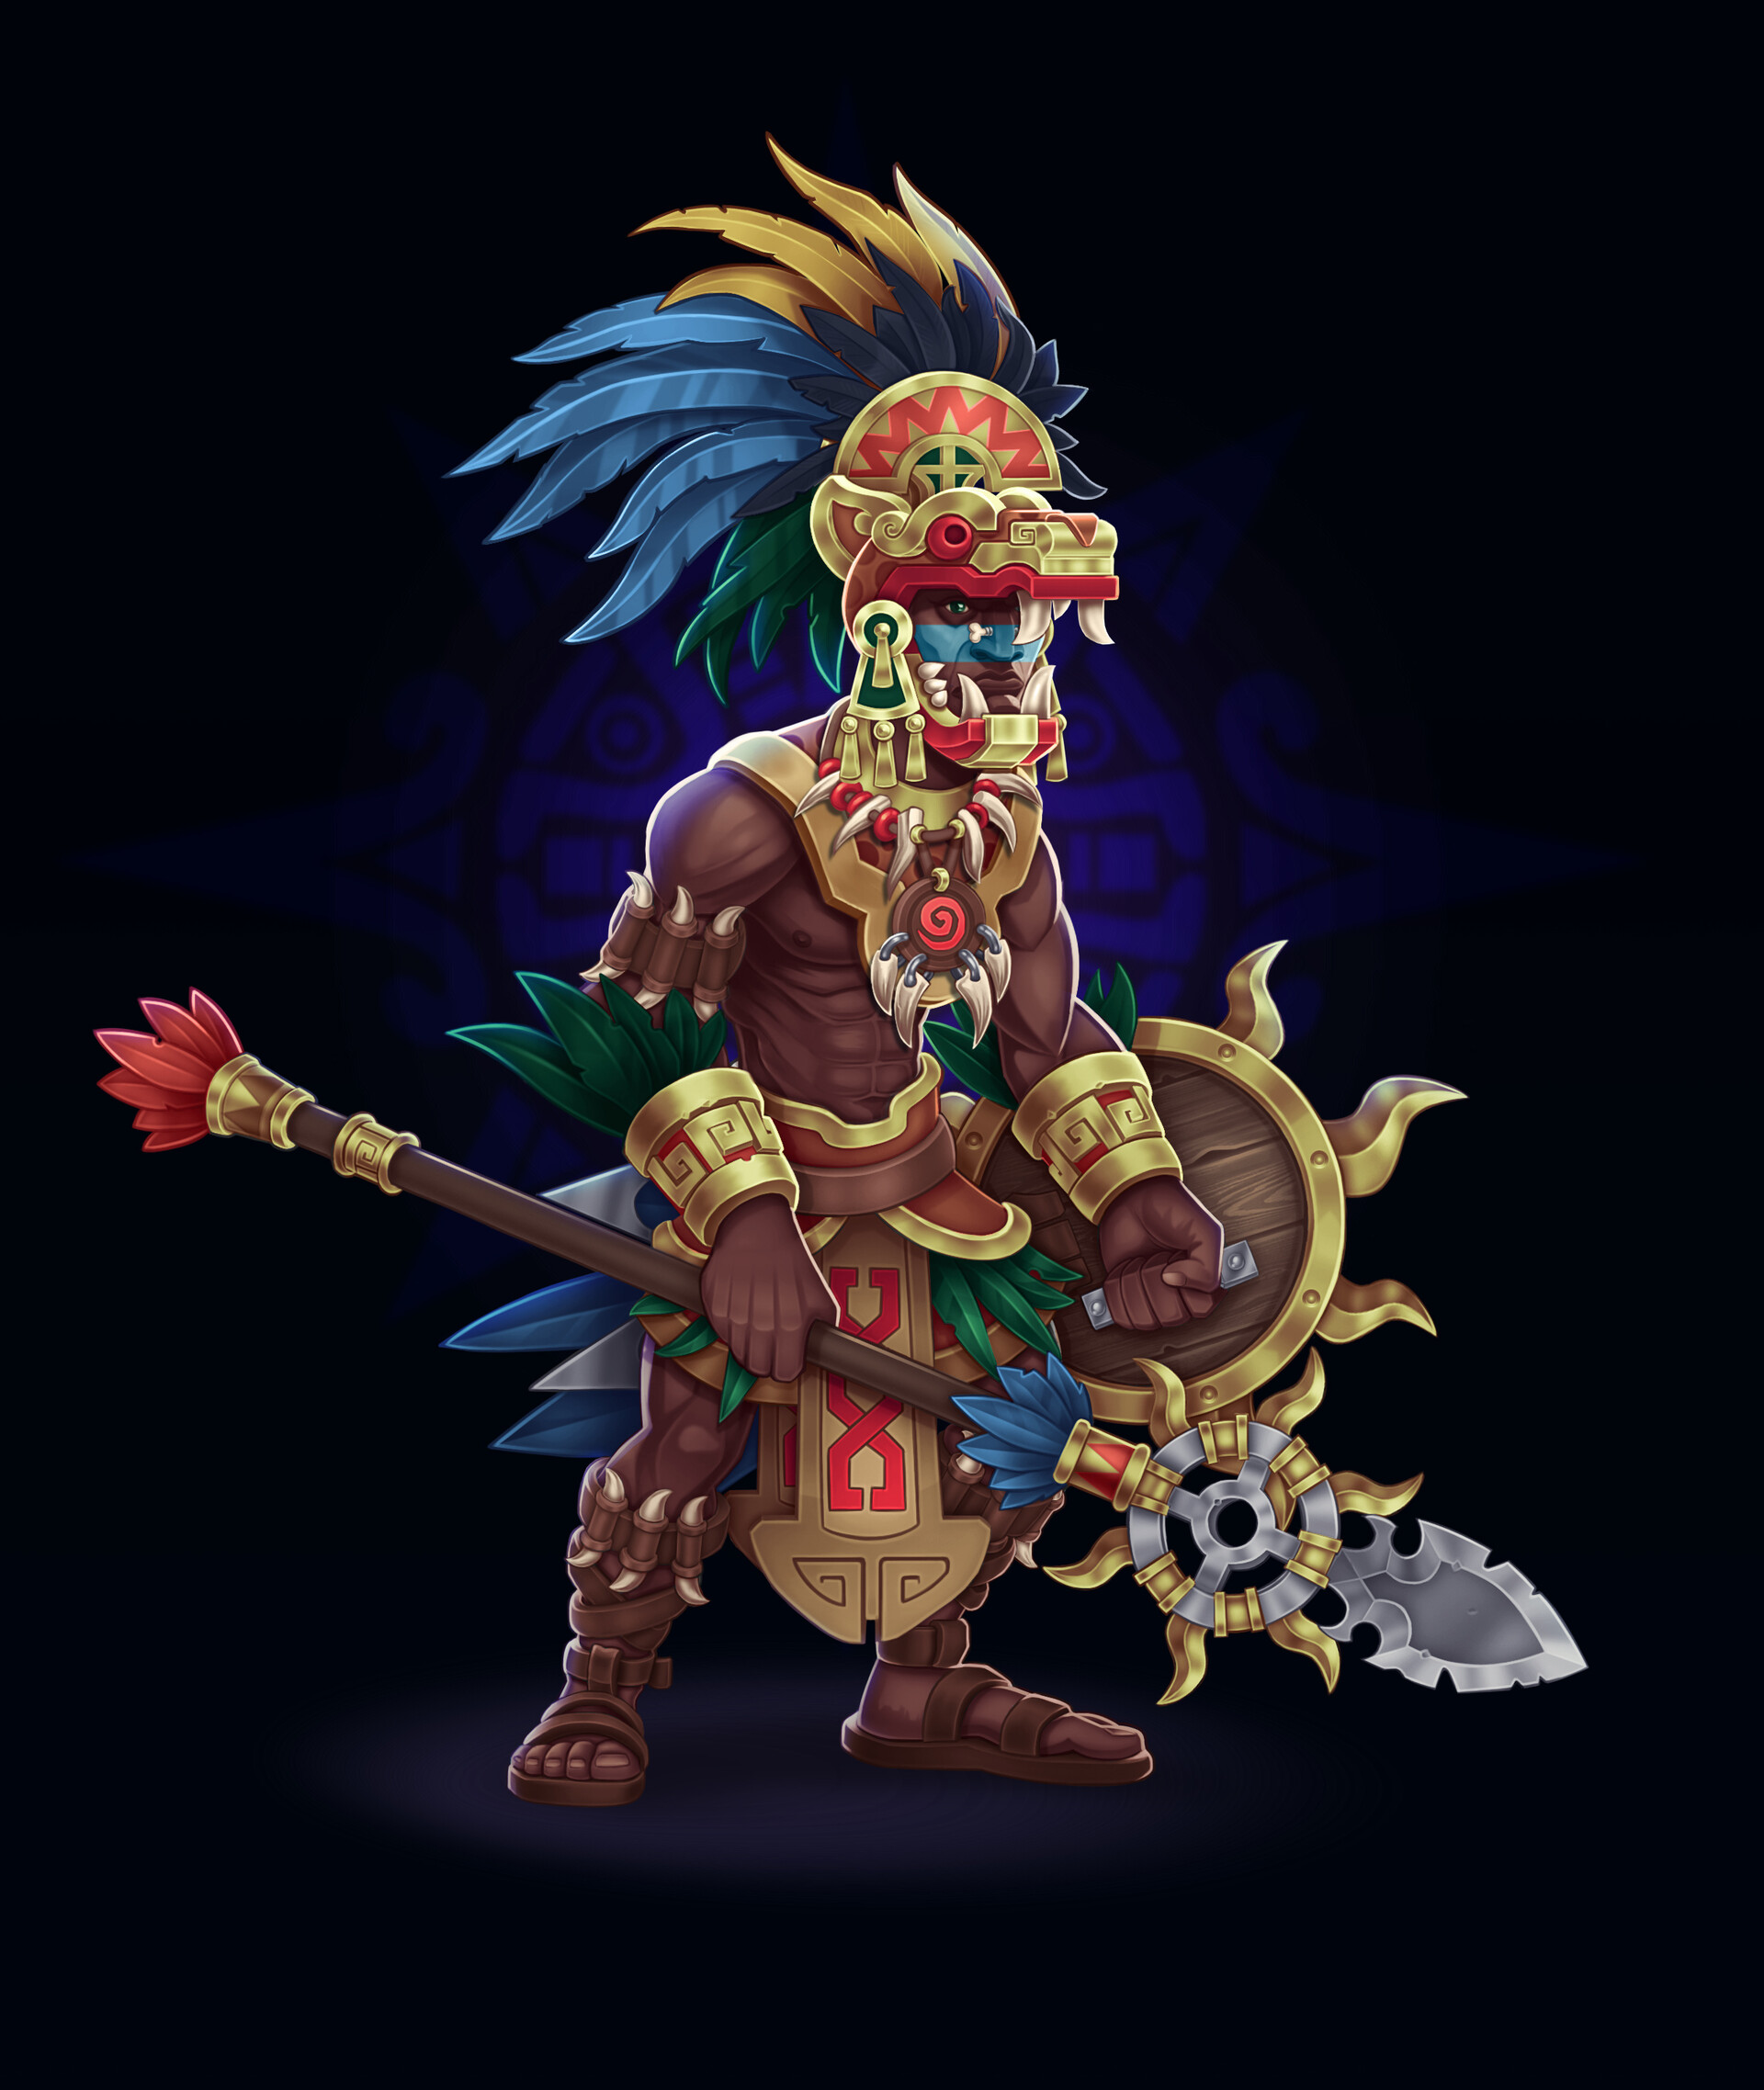 ArtStation - Aztec warriors